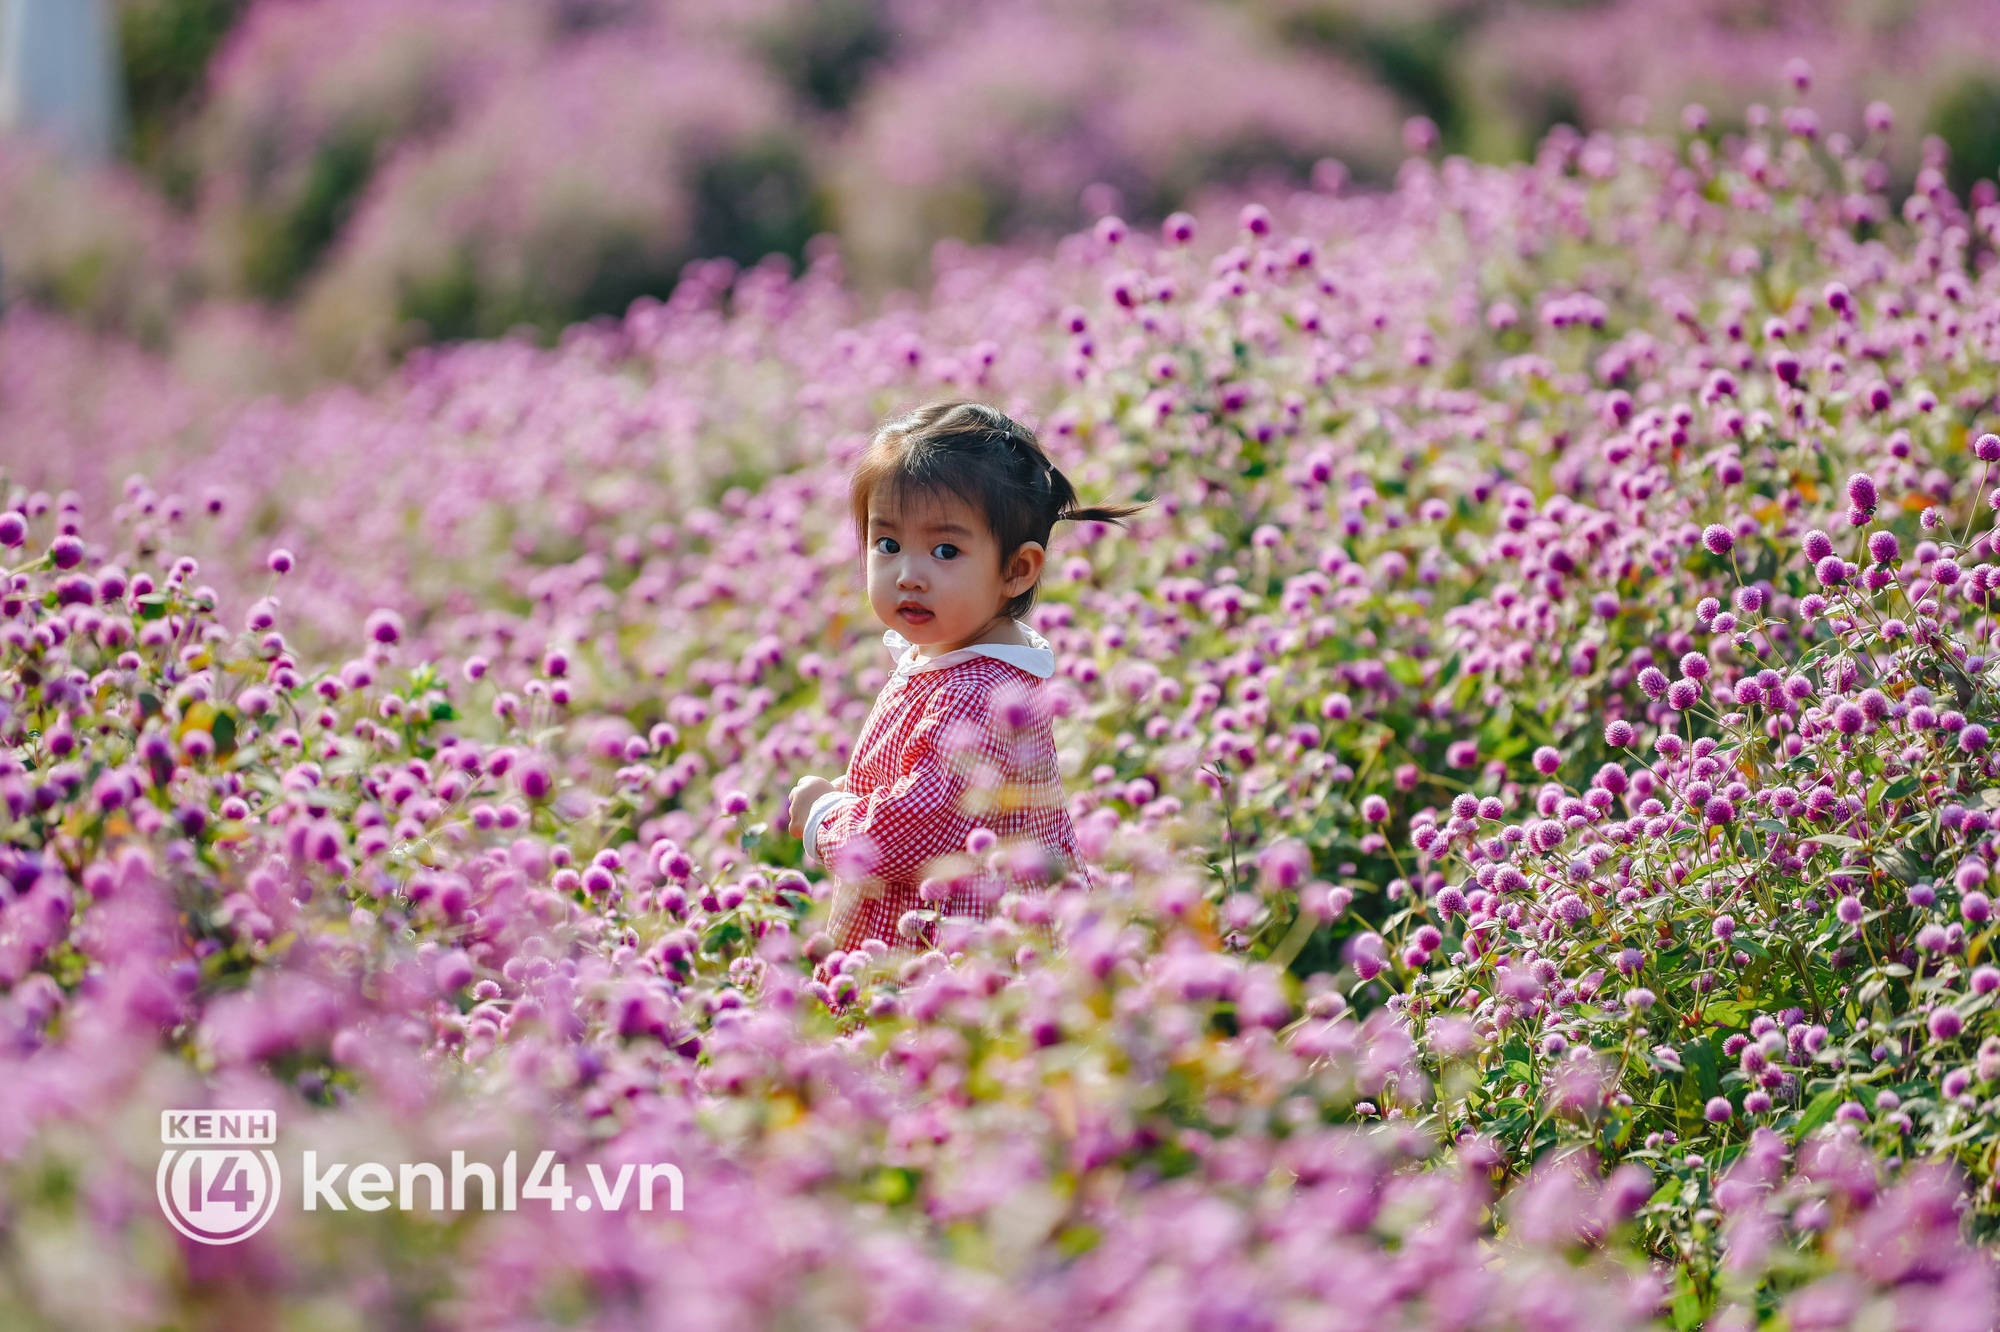 Ảnh: Điểm danh những vườn hoa hot nhất Hà Nội đang được giới trẻ rần rần kéo đến check in - Ảnh 15.